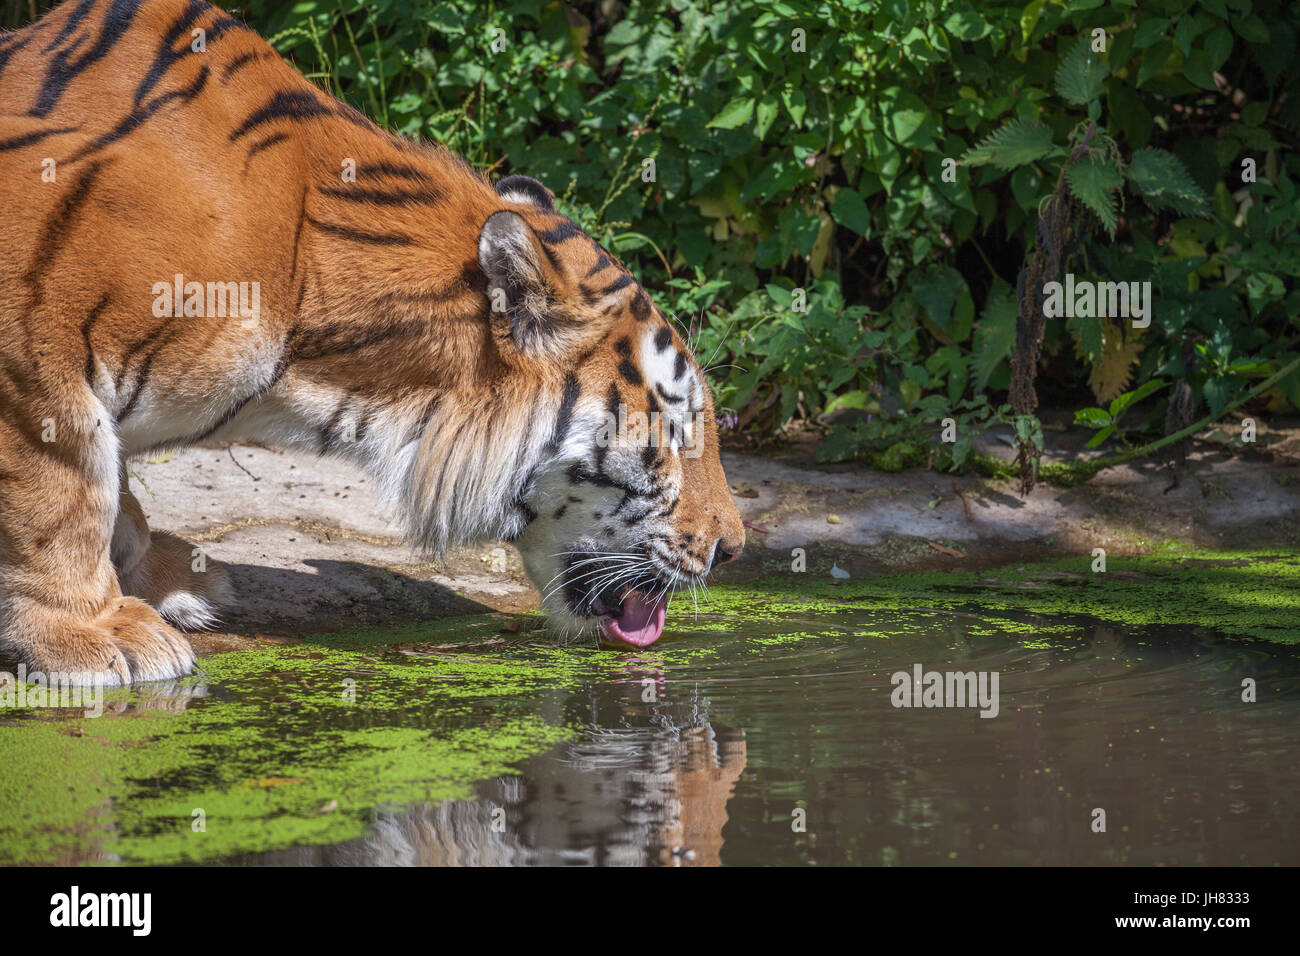 Tiger at Woburn Safari Park Foto Stock